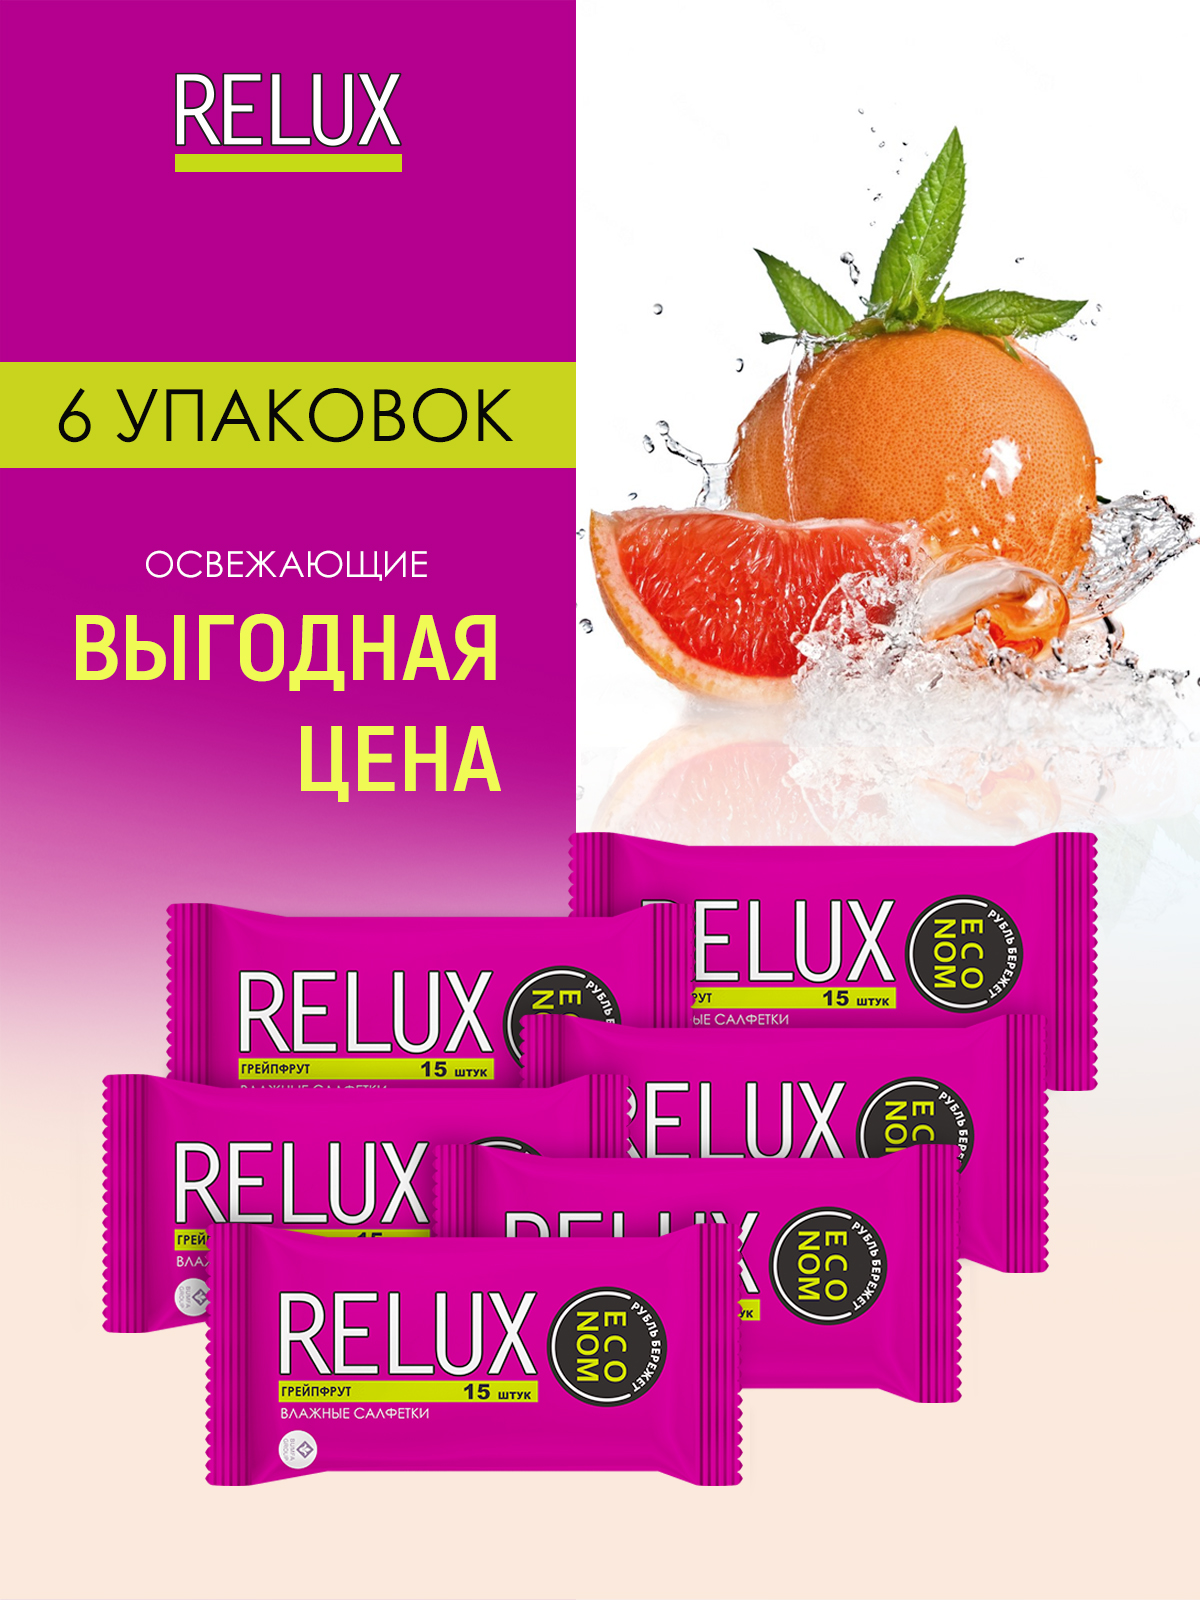 Салфетки влажные Relux освежающие грейпфрут 15шт 6 упаковок